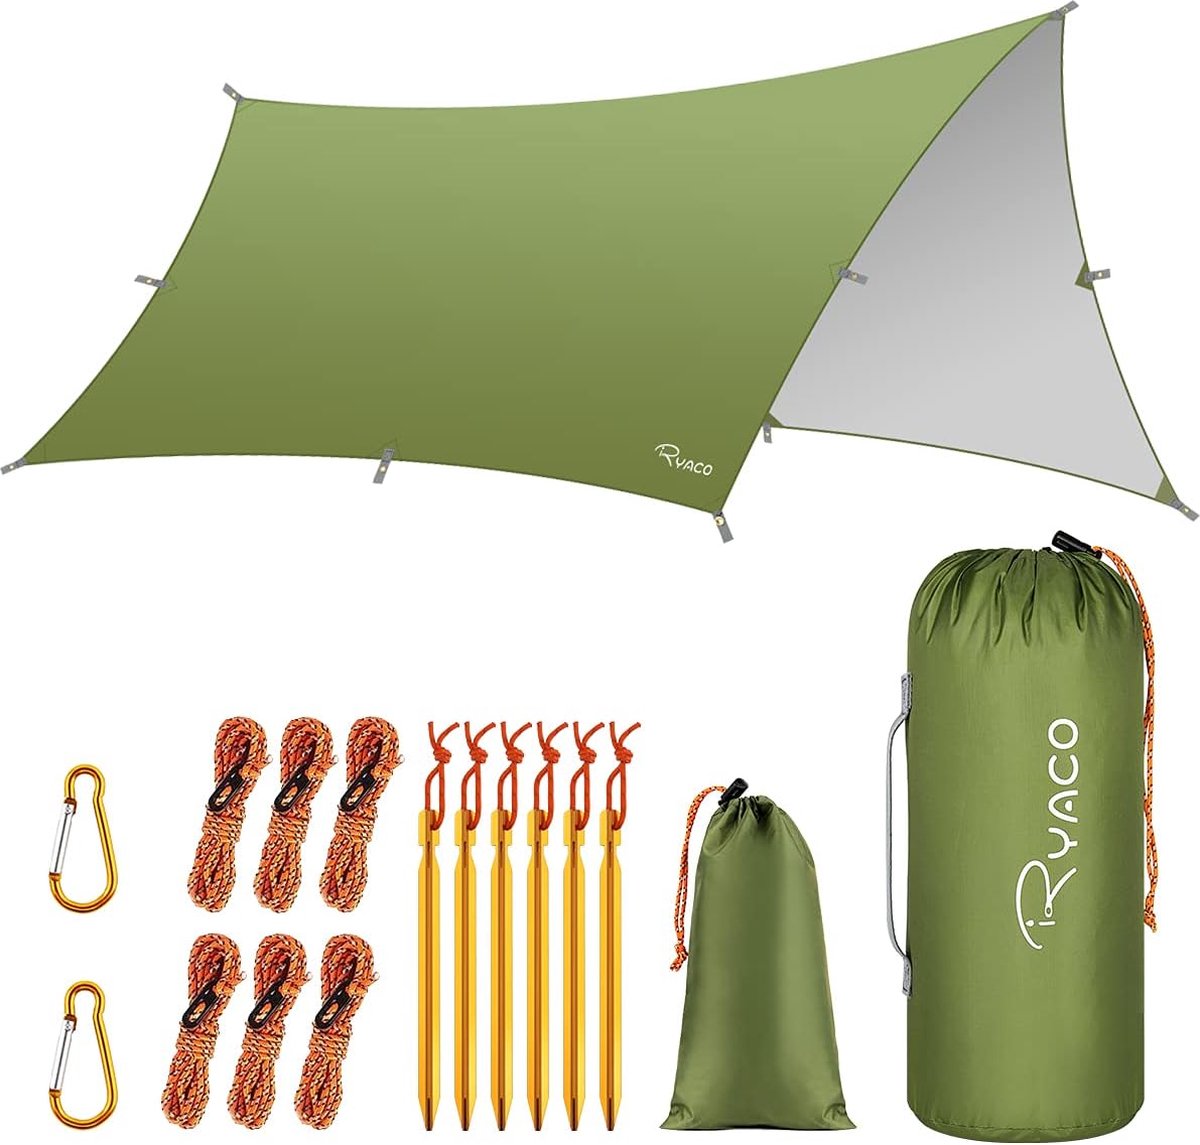 Ryaco Outdoor Tentzeil - Campingzeil - Zonnescherm met Opbergtas - Waterdicht - UV-Bestendig - Tarps voor kamperen - 3-4 Personen - 290 x 350 cm - Groen - Ryaco